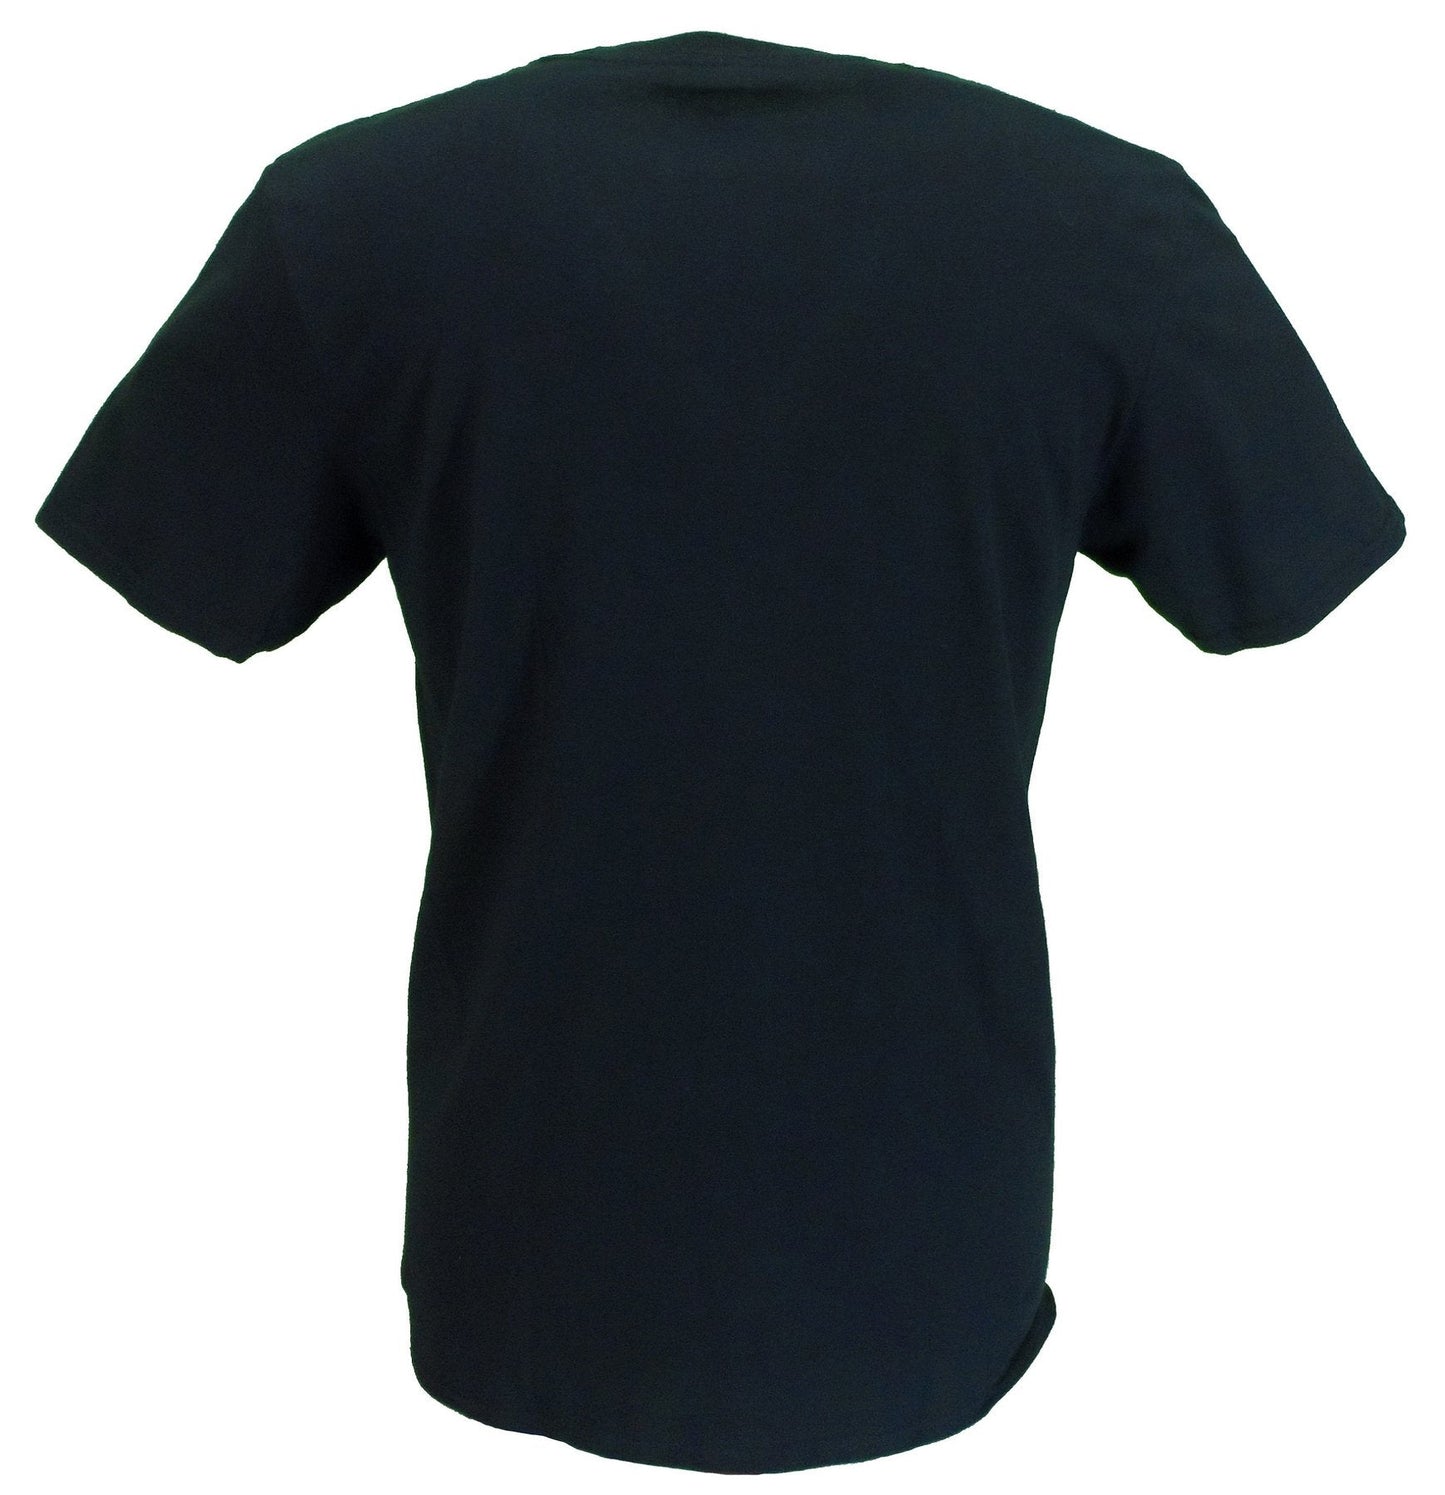 メンズ公式ライセンス ピーター トッシュ ライトニング ロゴ T シャツ